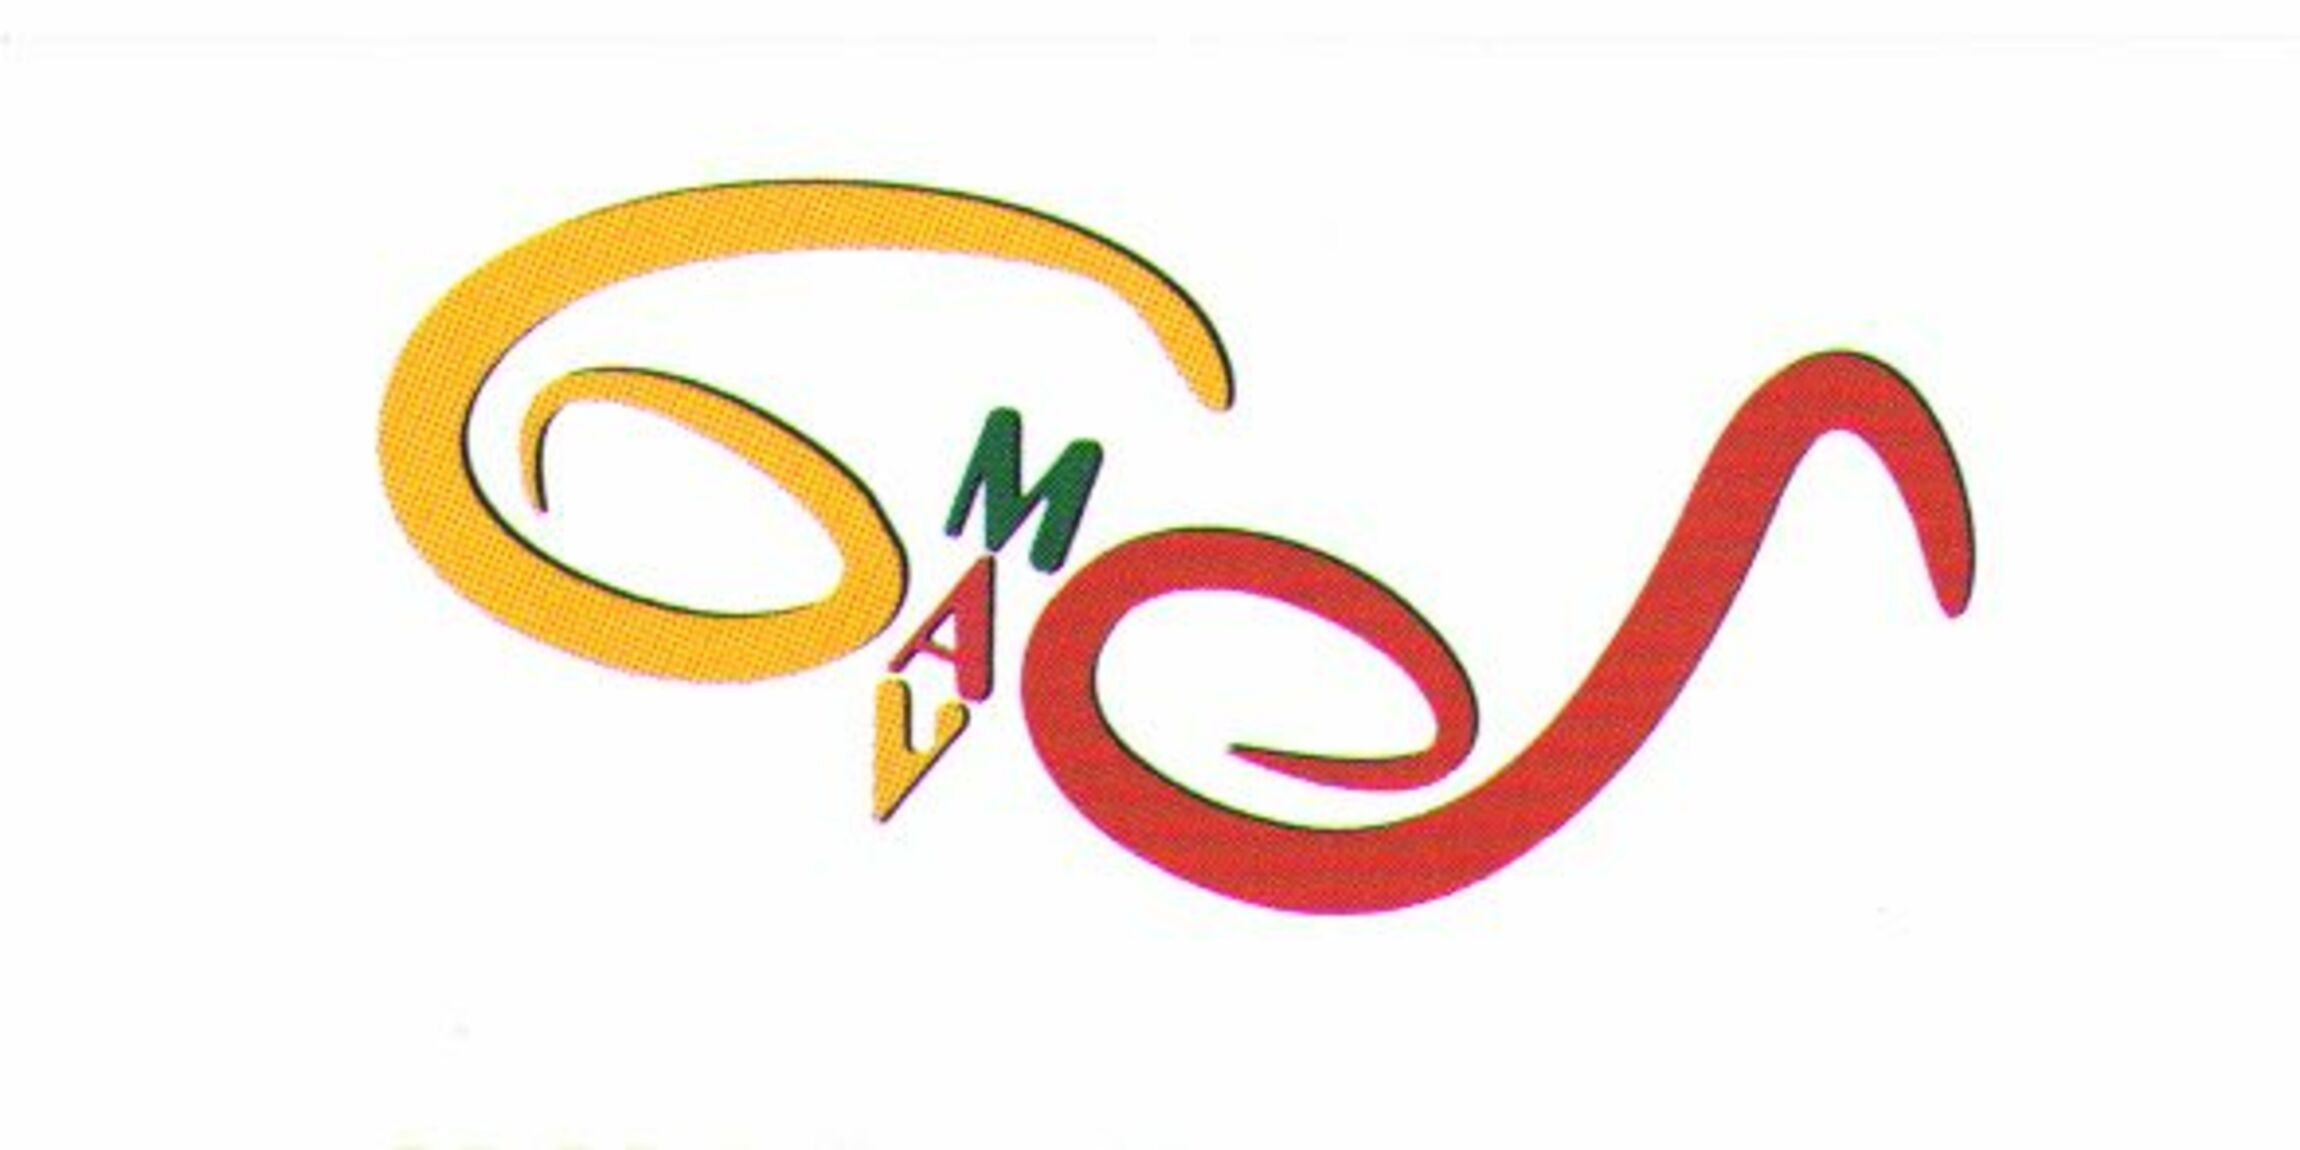 MAV-Logo